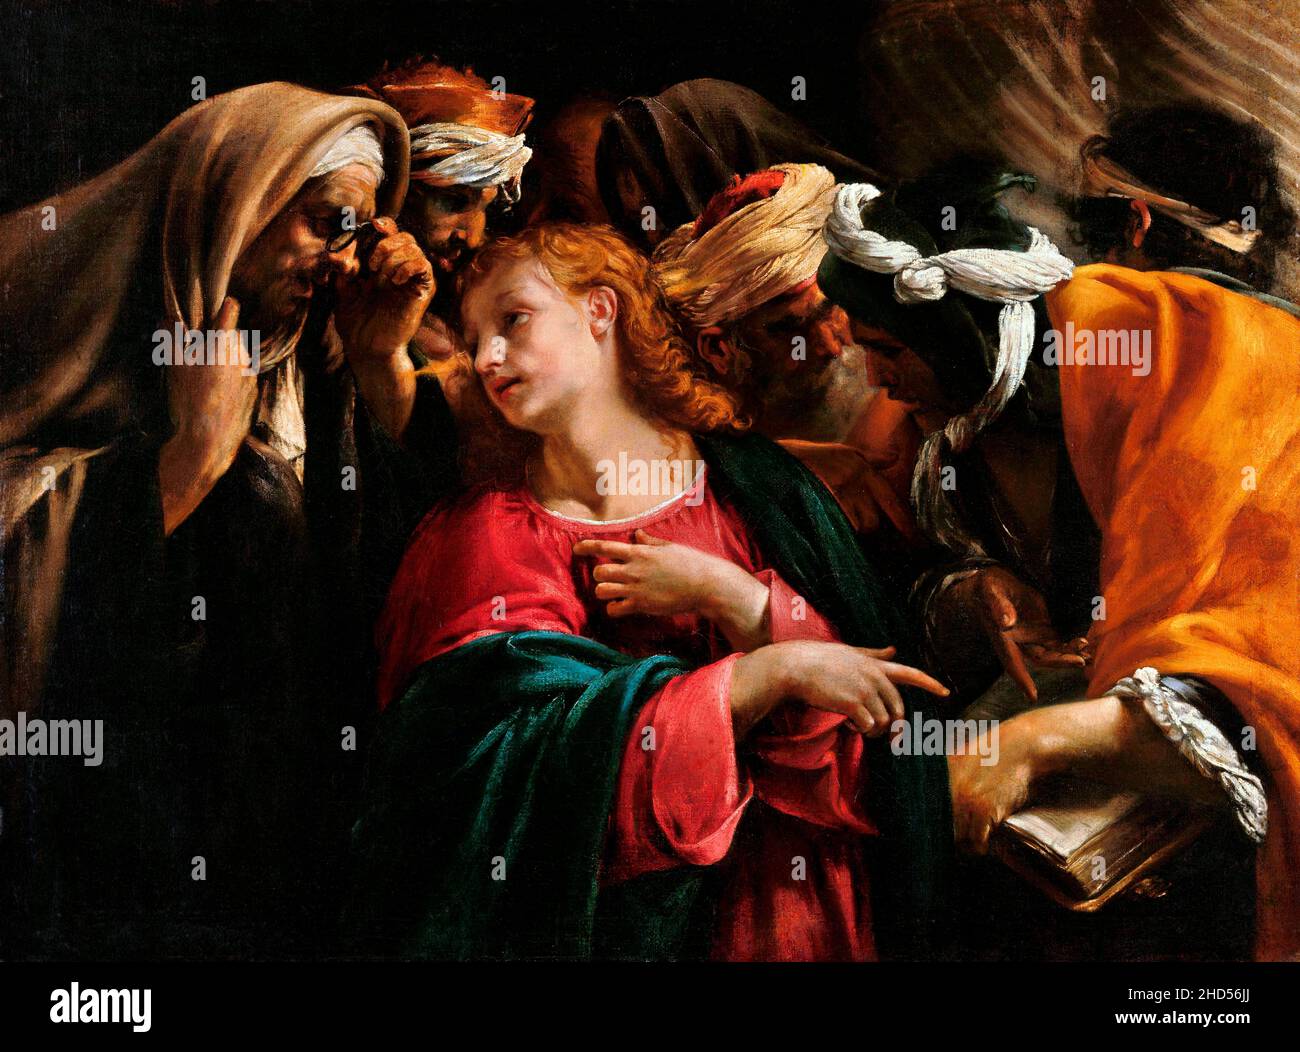 Christus unter den Ärzten des italienischen Barockkünstlers Orazio Borgianni (1574-1616), Öl auf Leinwand, c. 1609 Stockfoto